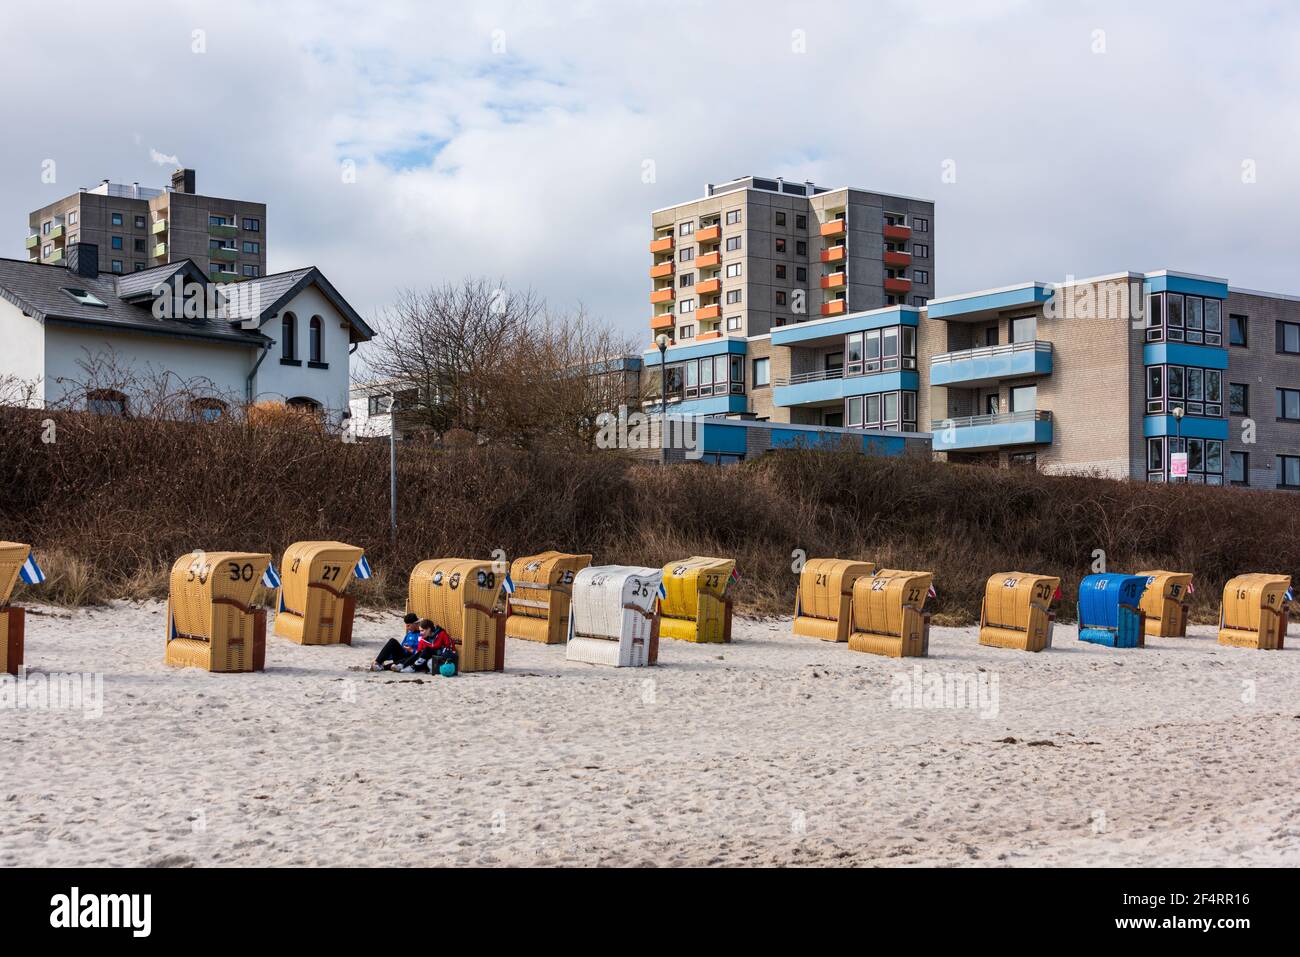 Kurz vor Ostern am Strand a Kiel-Schillksee, Strandkörbe werden für die bevorstehende Saison aufgebaut Foto Stock